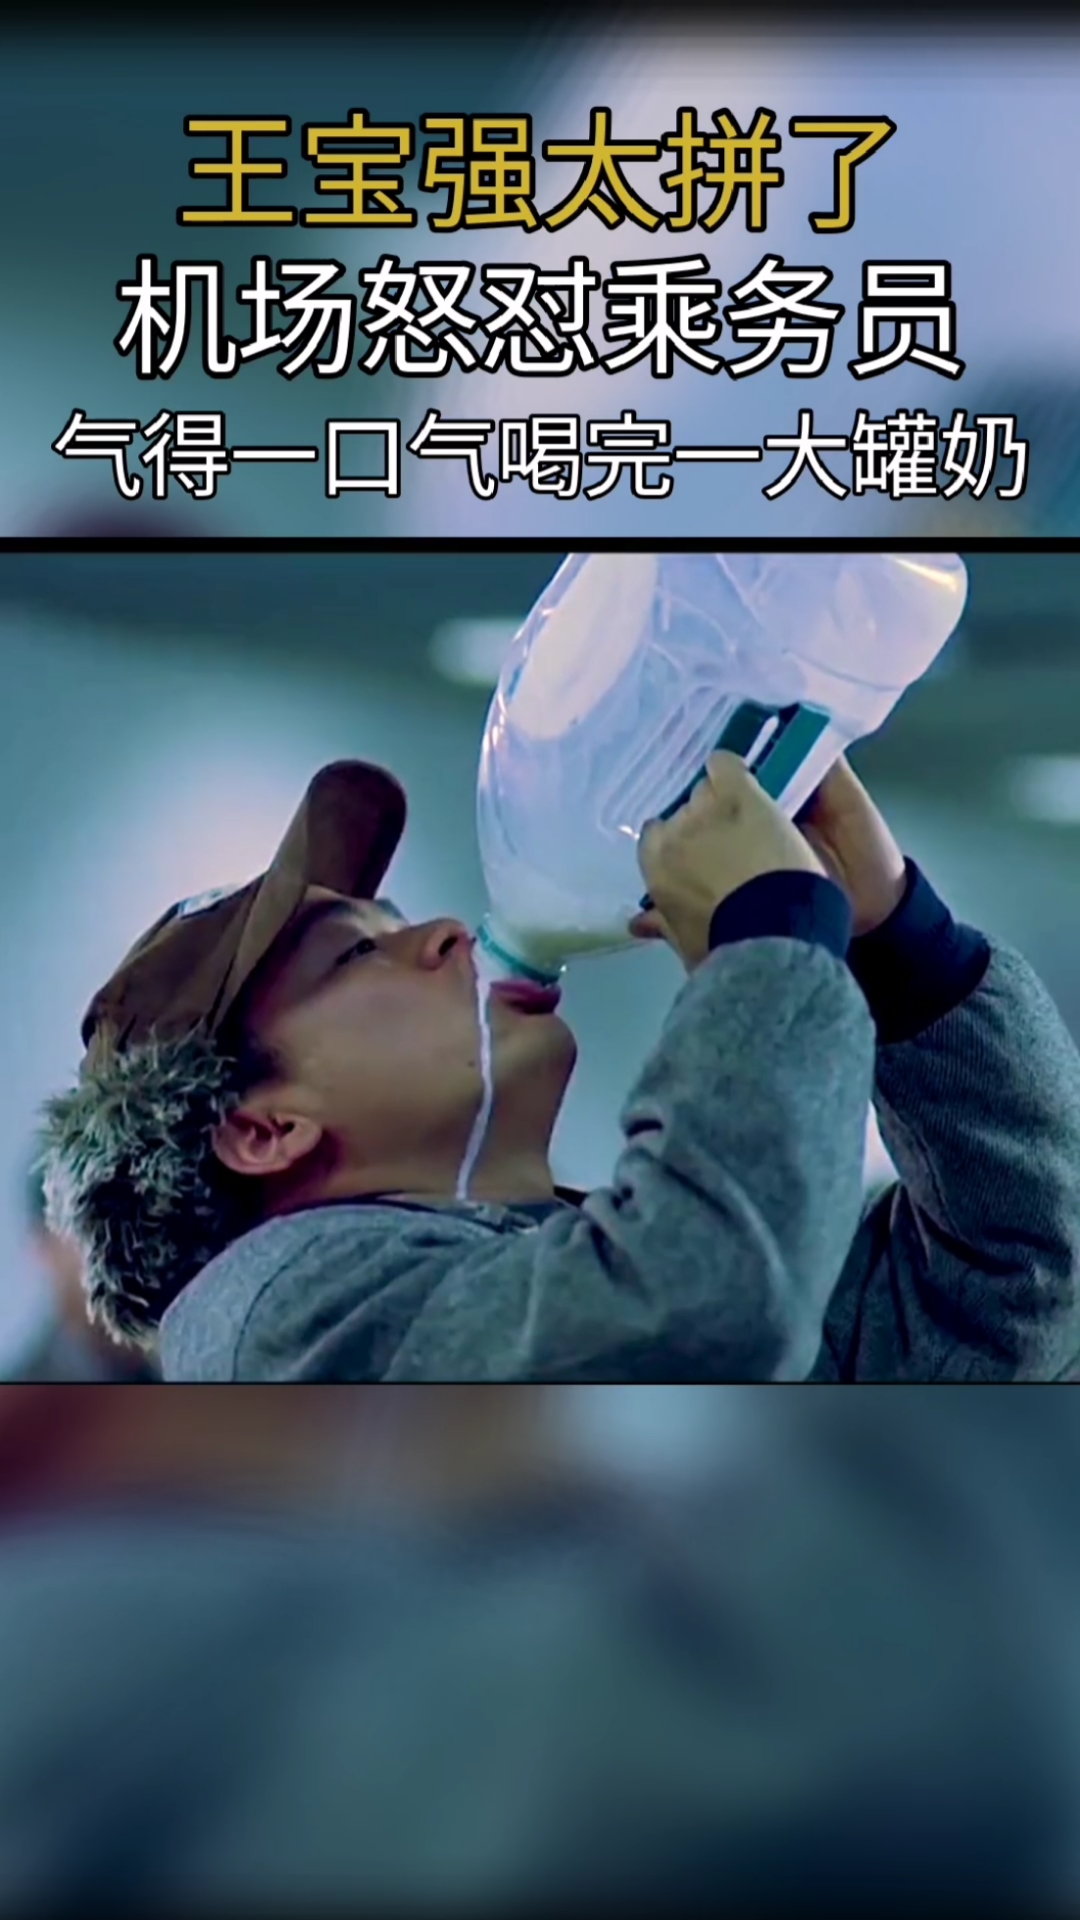 王宝强喝牛奶表情包图片